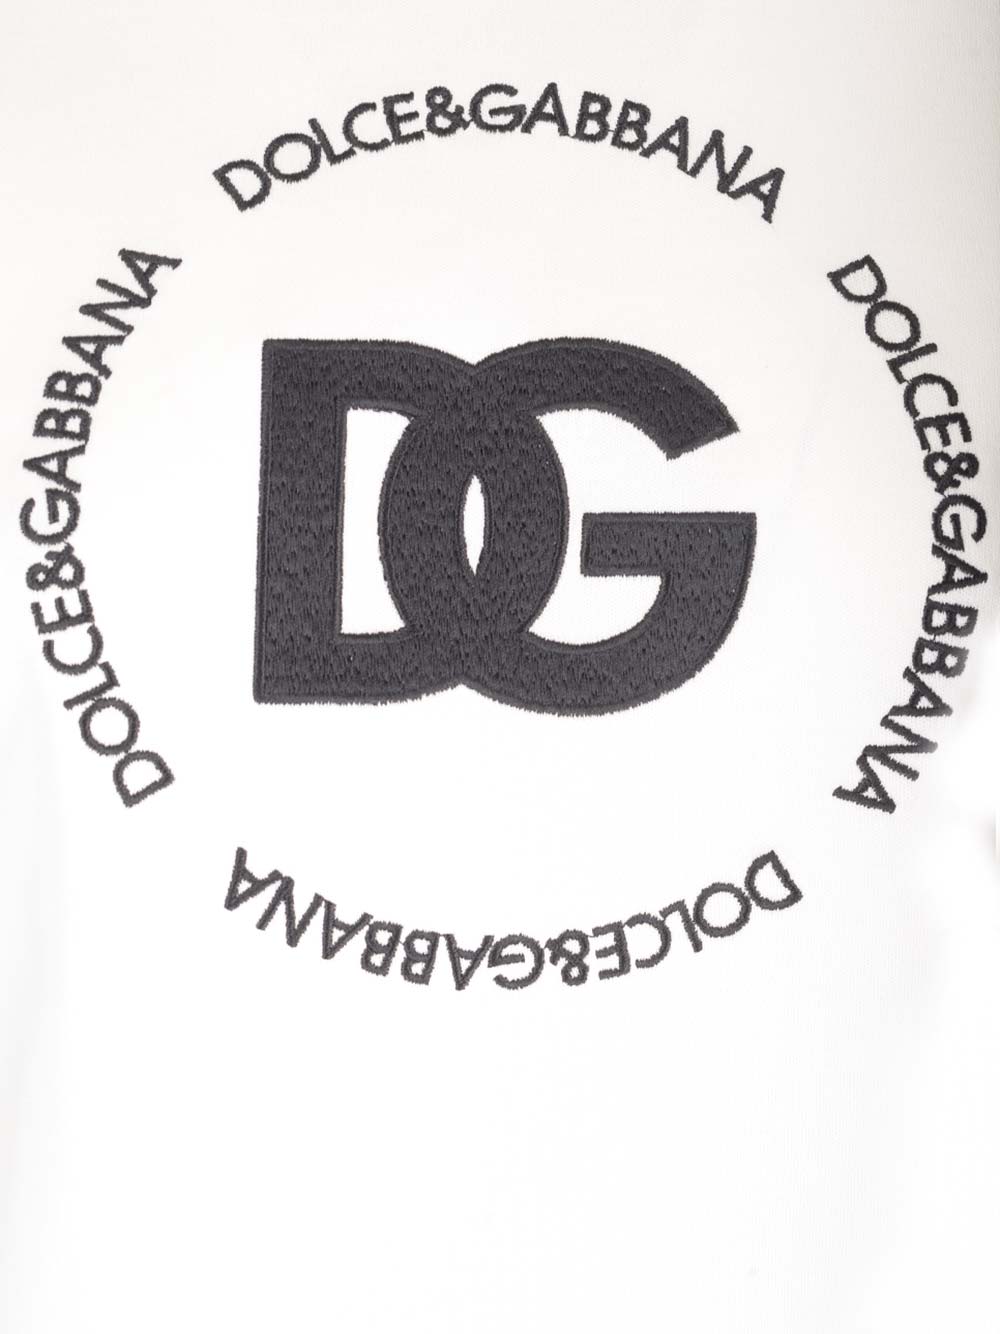 Shop Dolce & Gabbana Signature T-shirt In Bianco